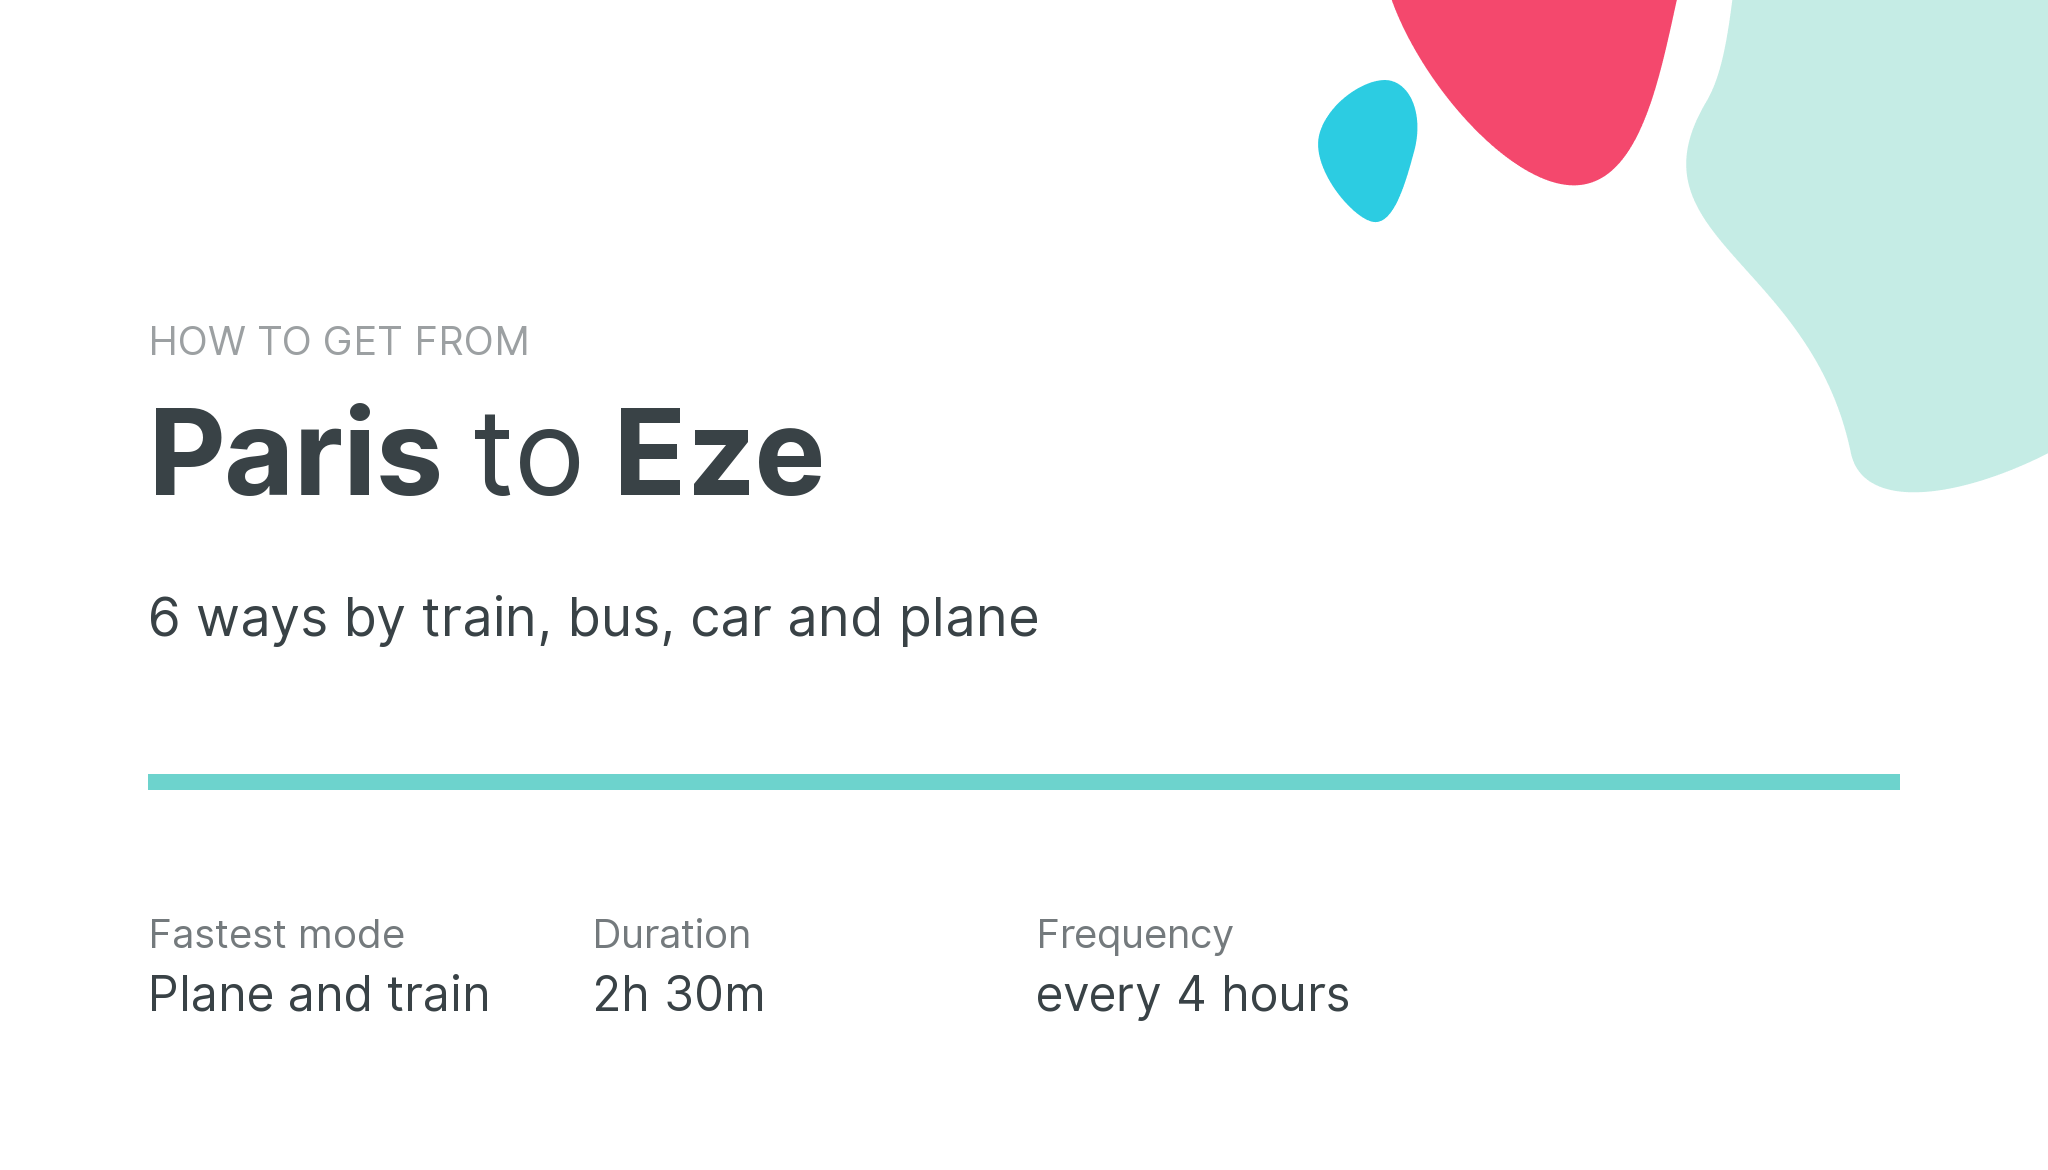 How do I get from Paris to Eze